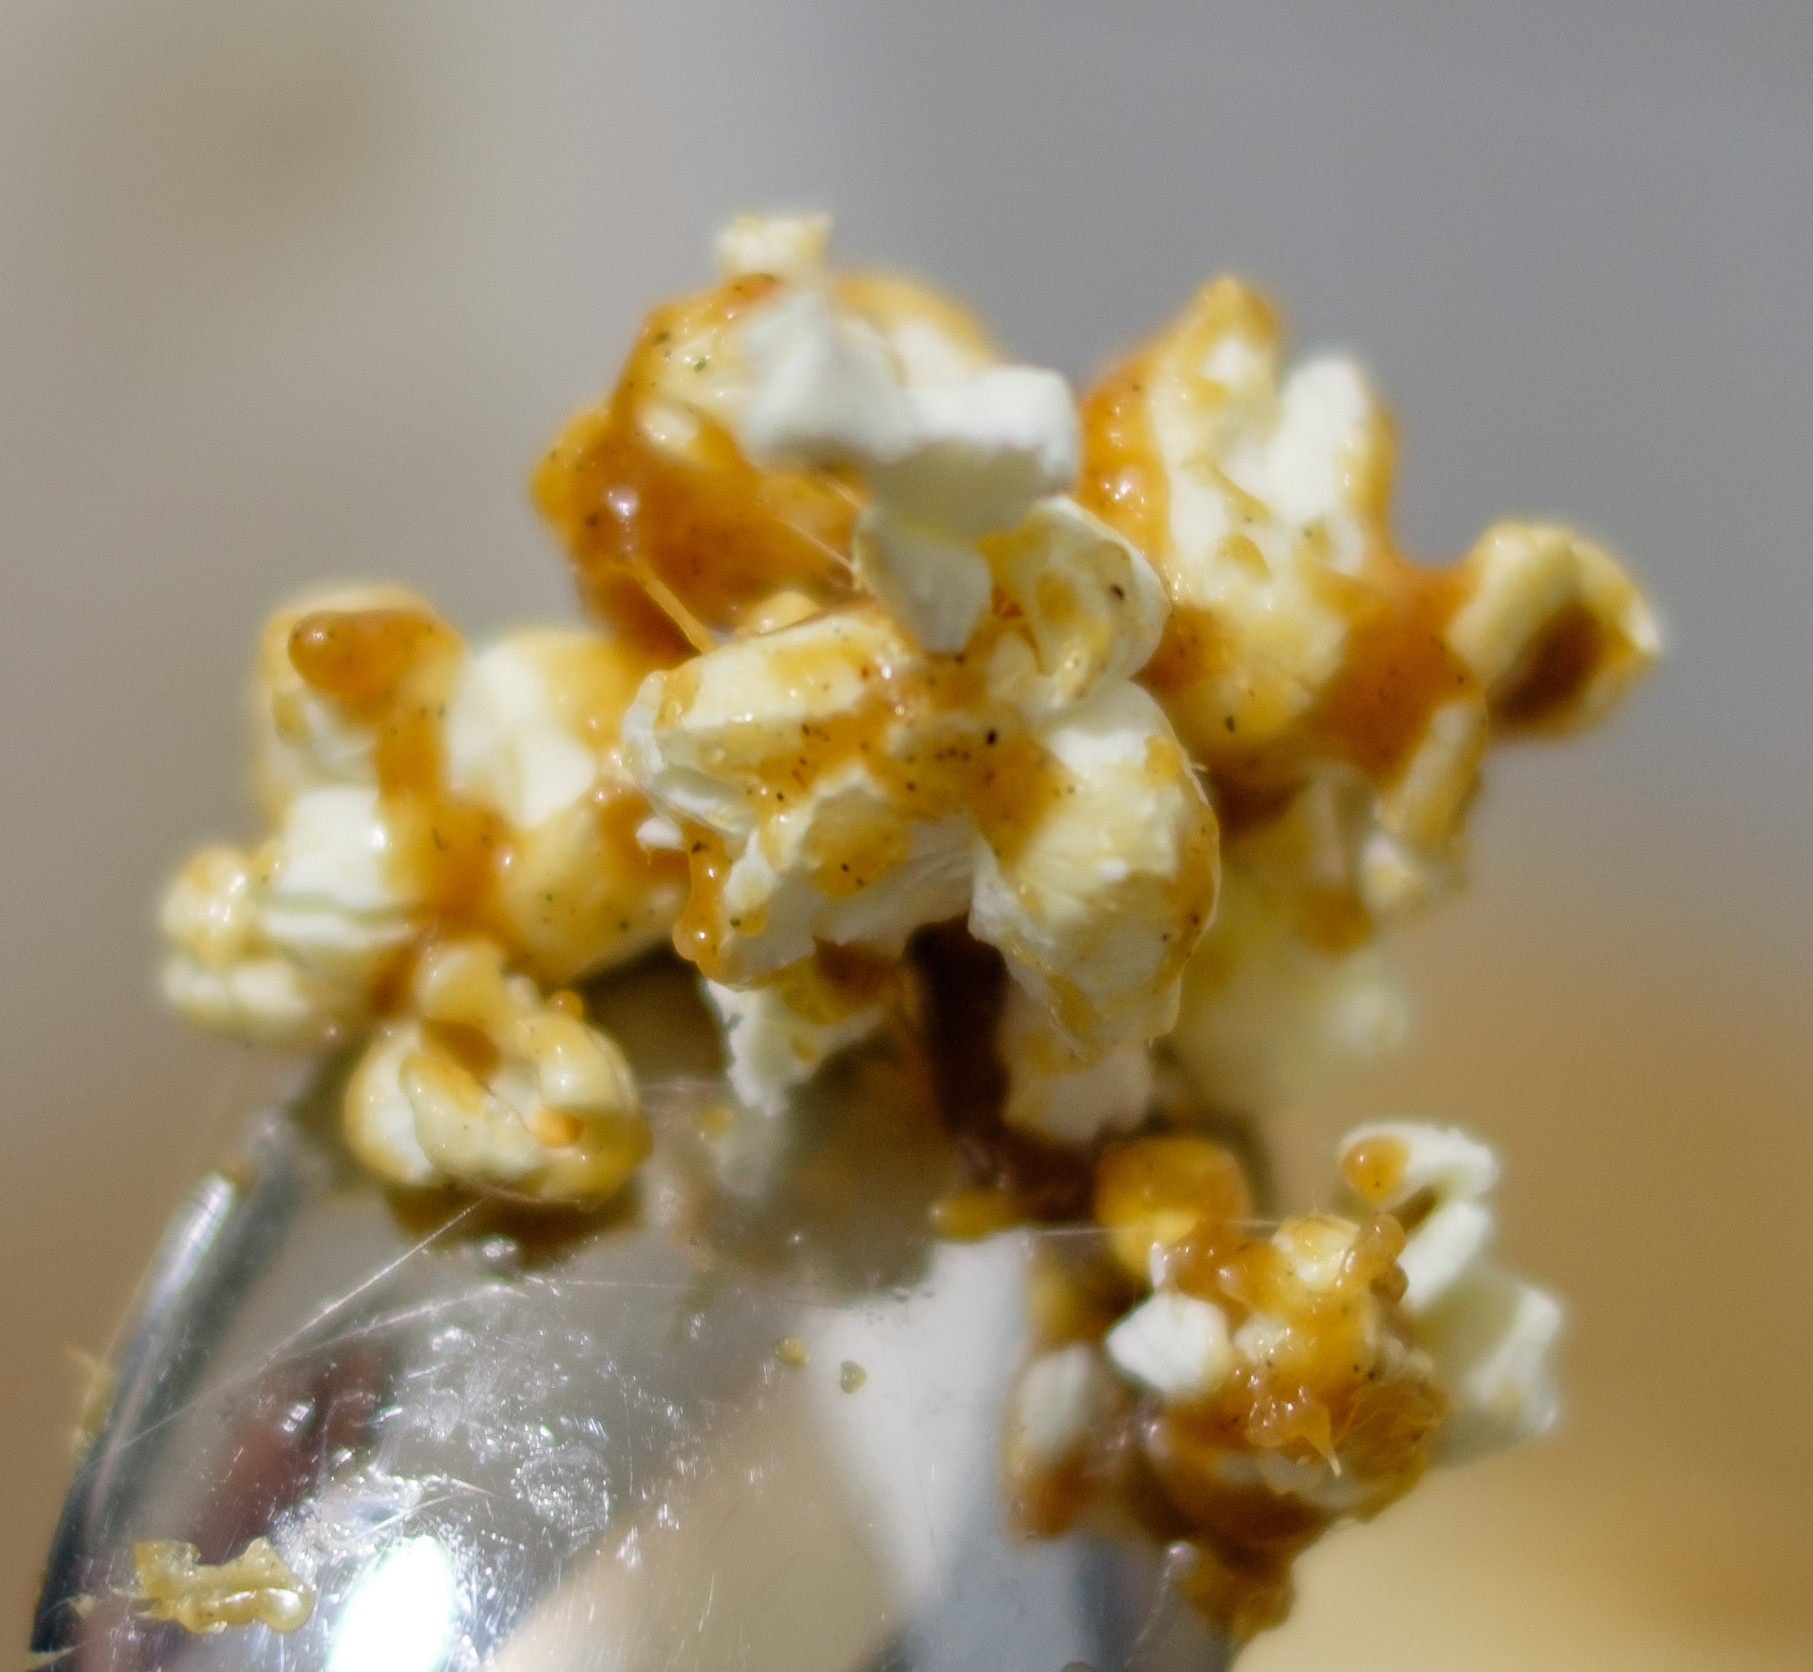 Karamell-Popcorn